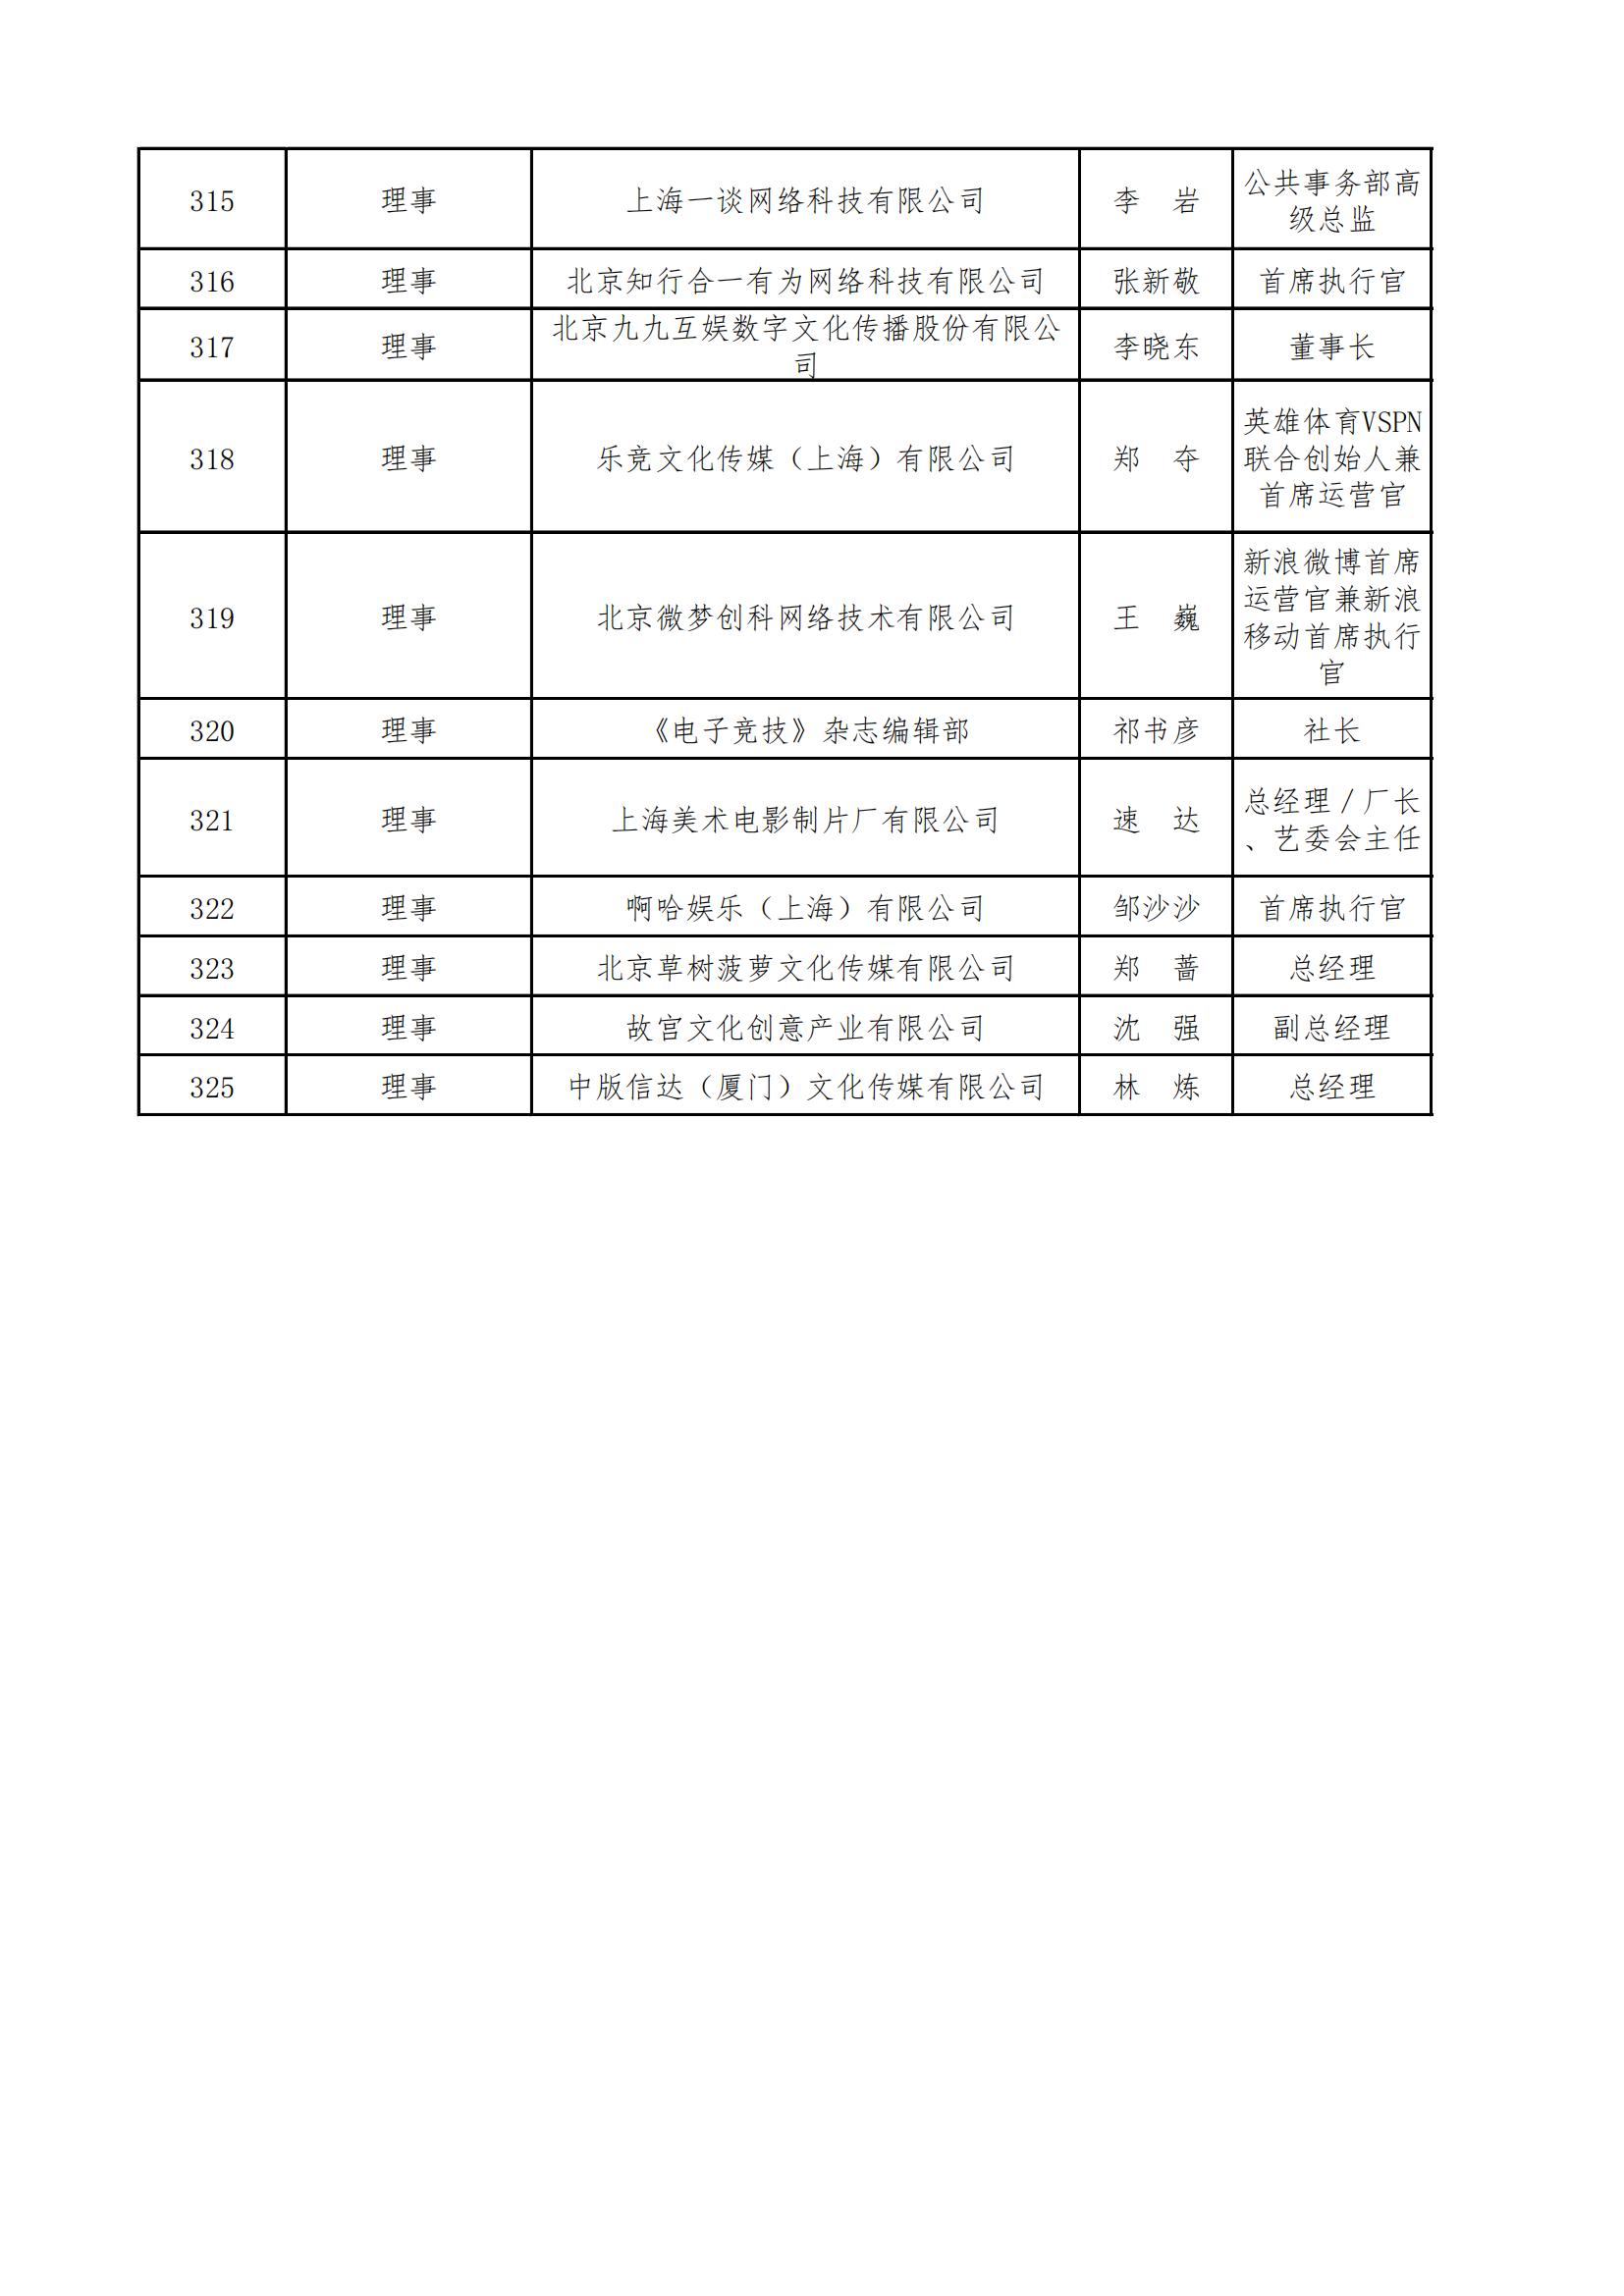 中国音像与数字出版协会第五届理事会名录_11.jpg